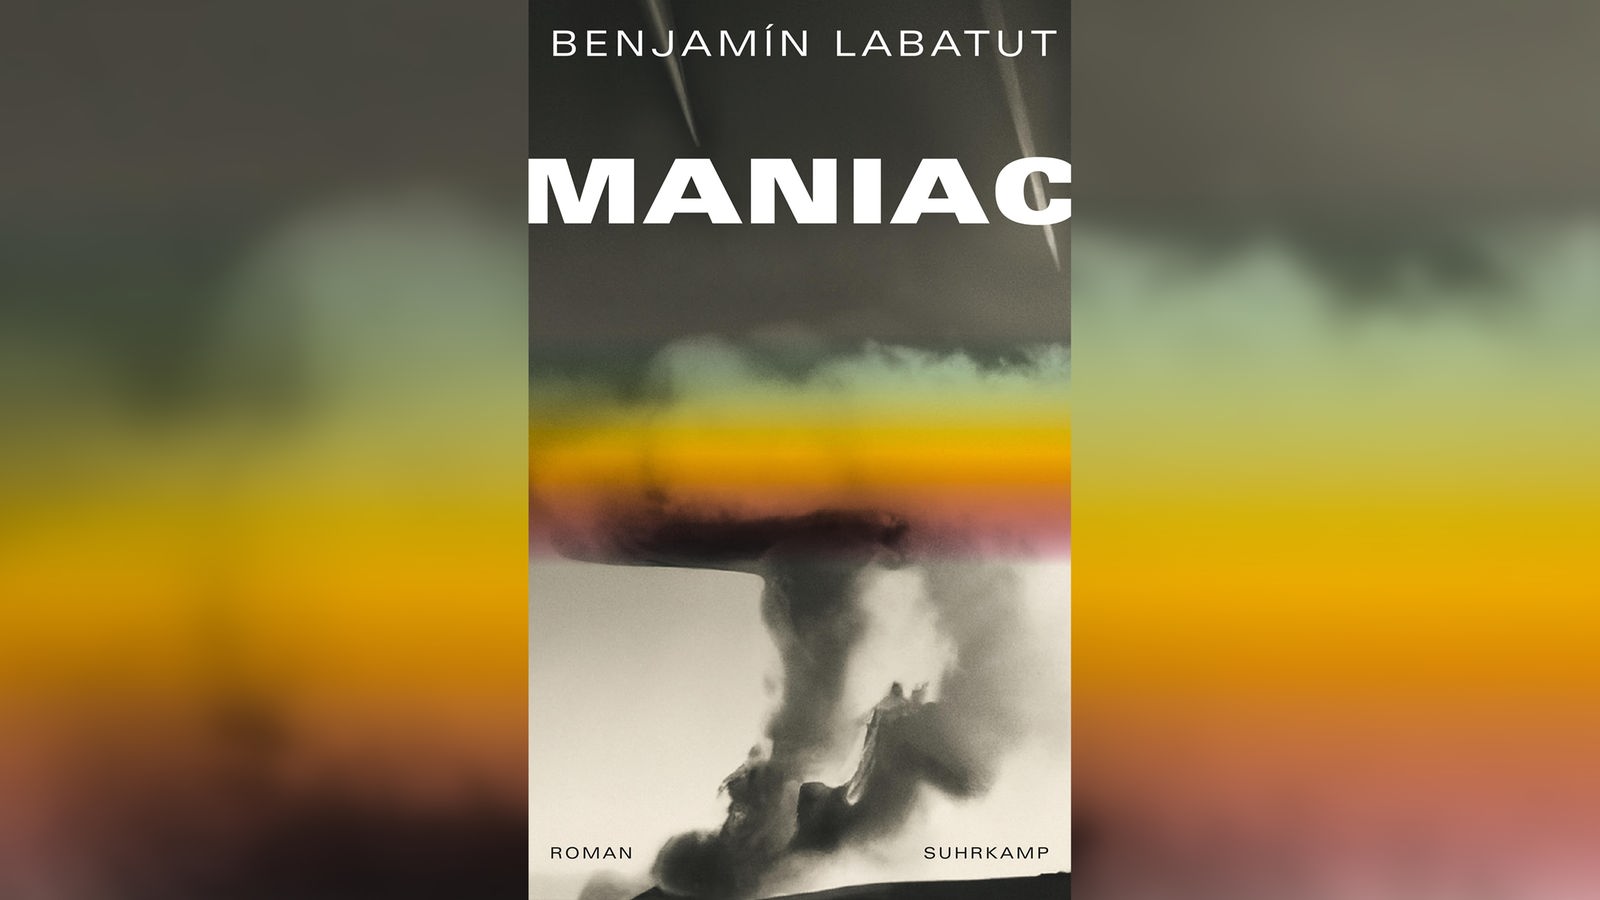 Benjamín Labatut: MANIAC